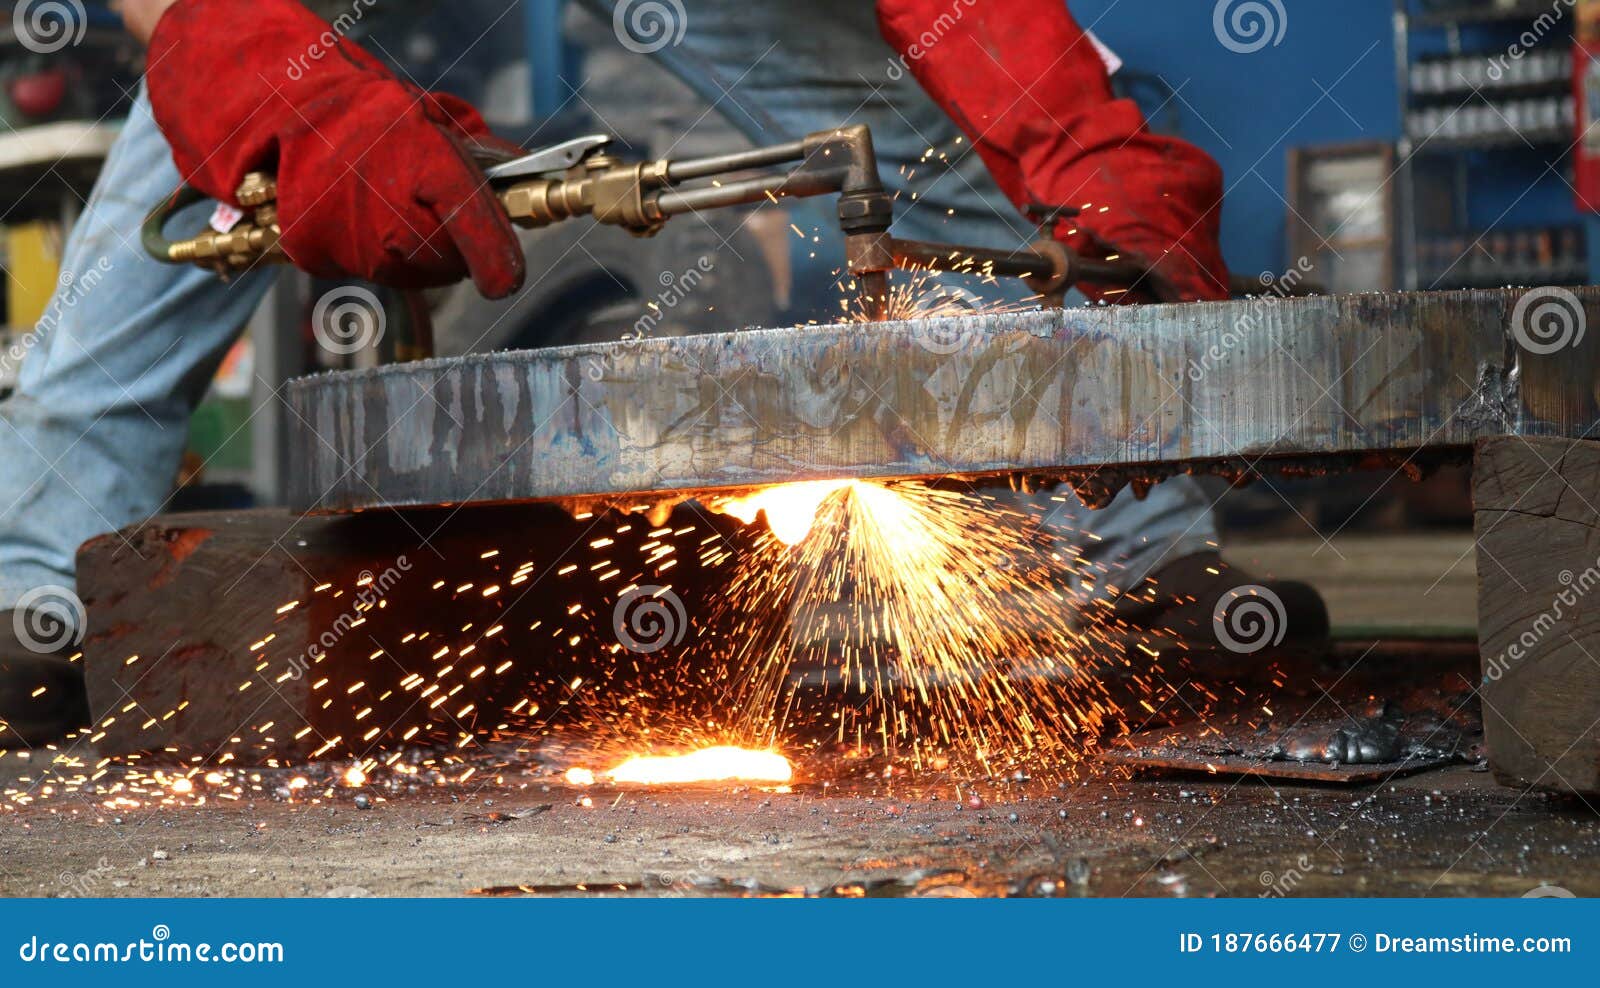 worker melting welding metal industry oxyacetilene